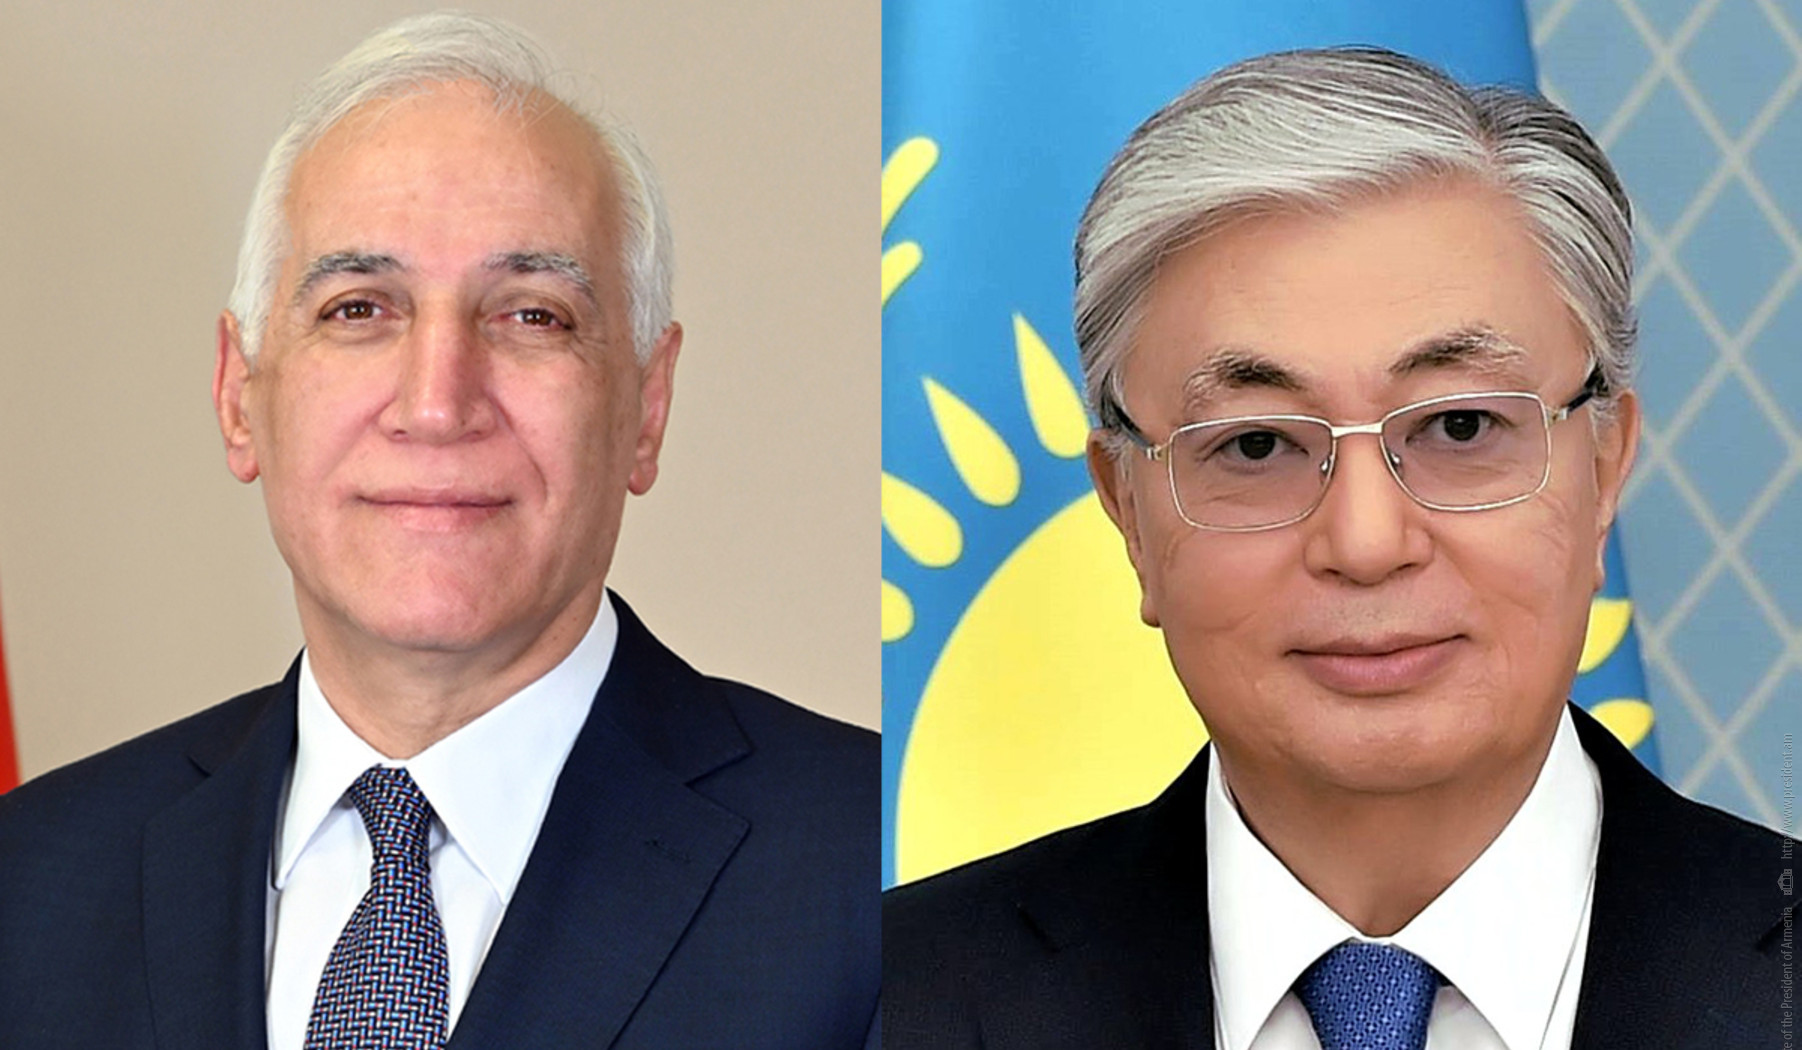 Президент Ваагн Хачатурян направил поздравительное послание Касым-Жомарту Токаеву по случаю его дня рождения